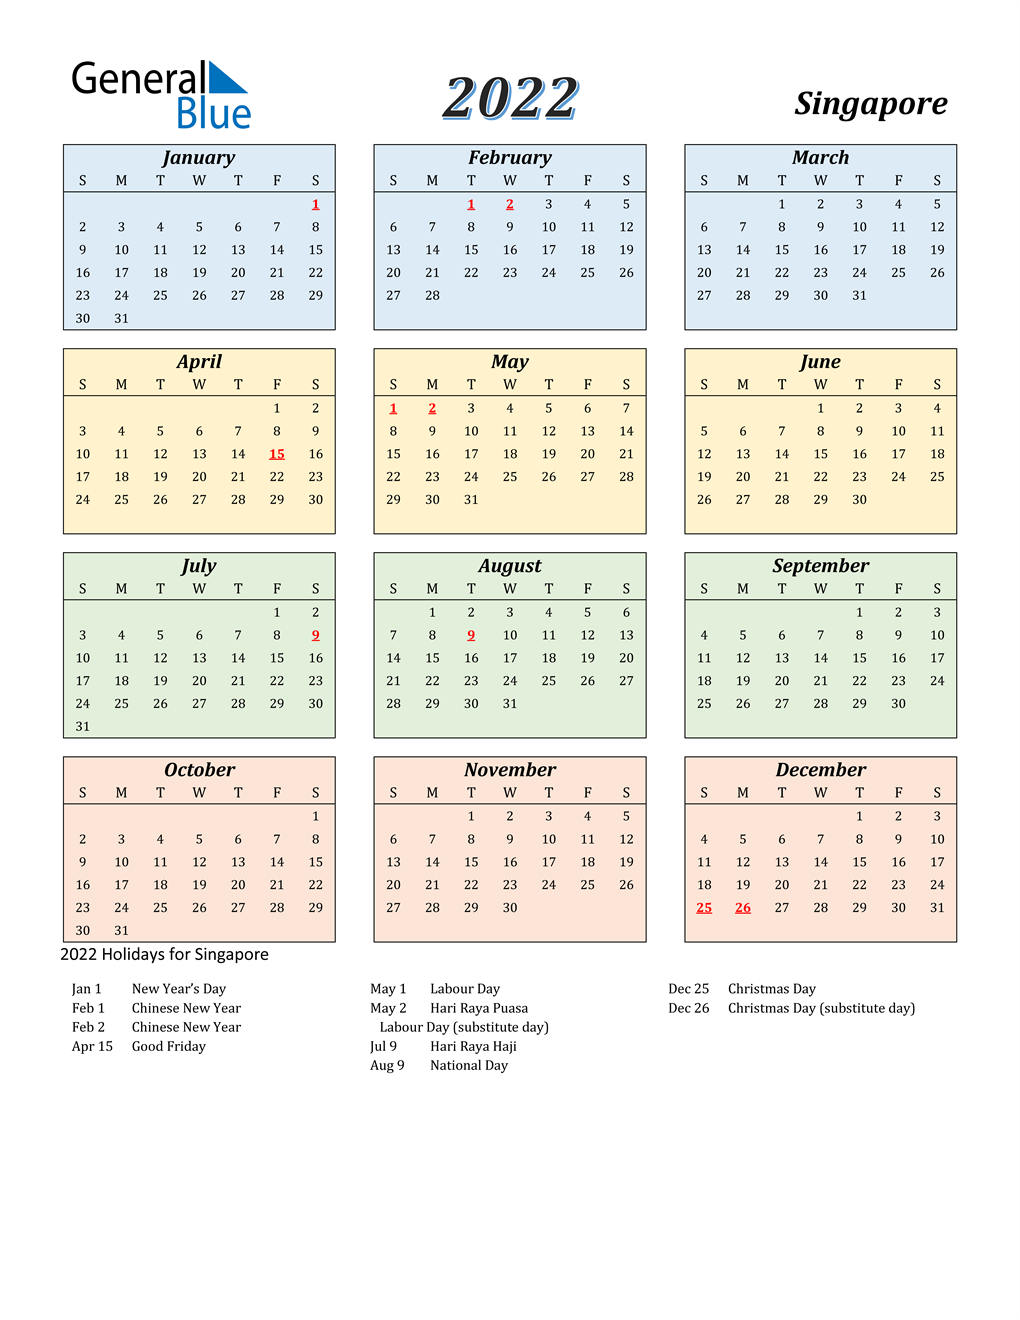 Ms Calendar 2022 2022 Singapore Calendar With Holidays